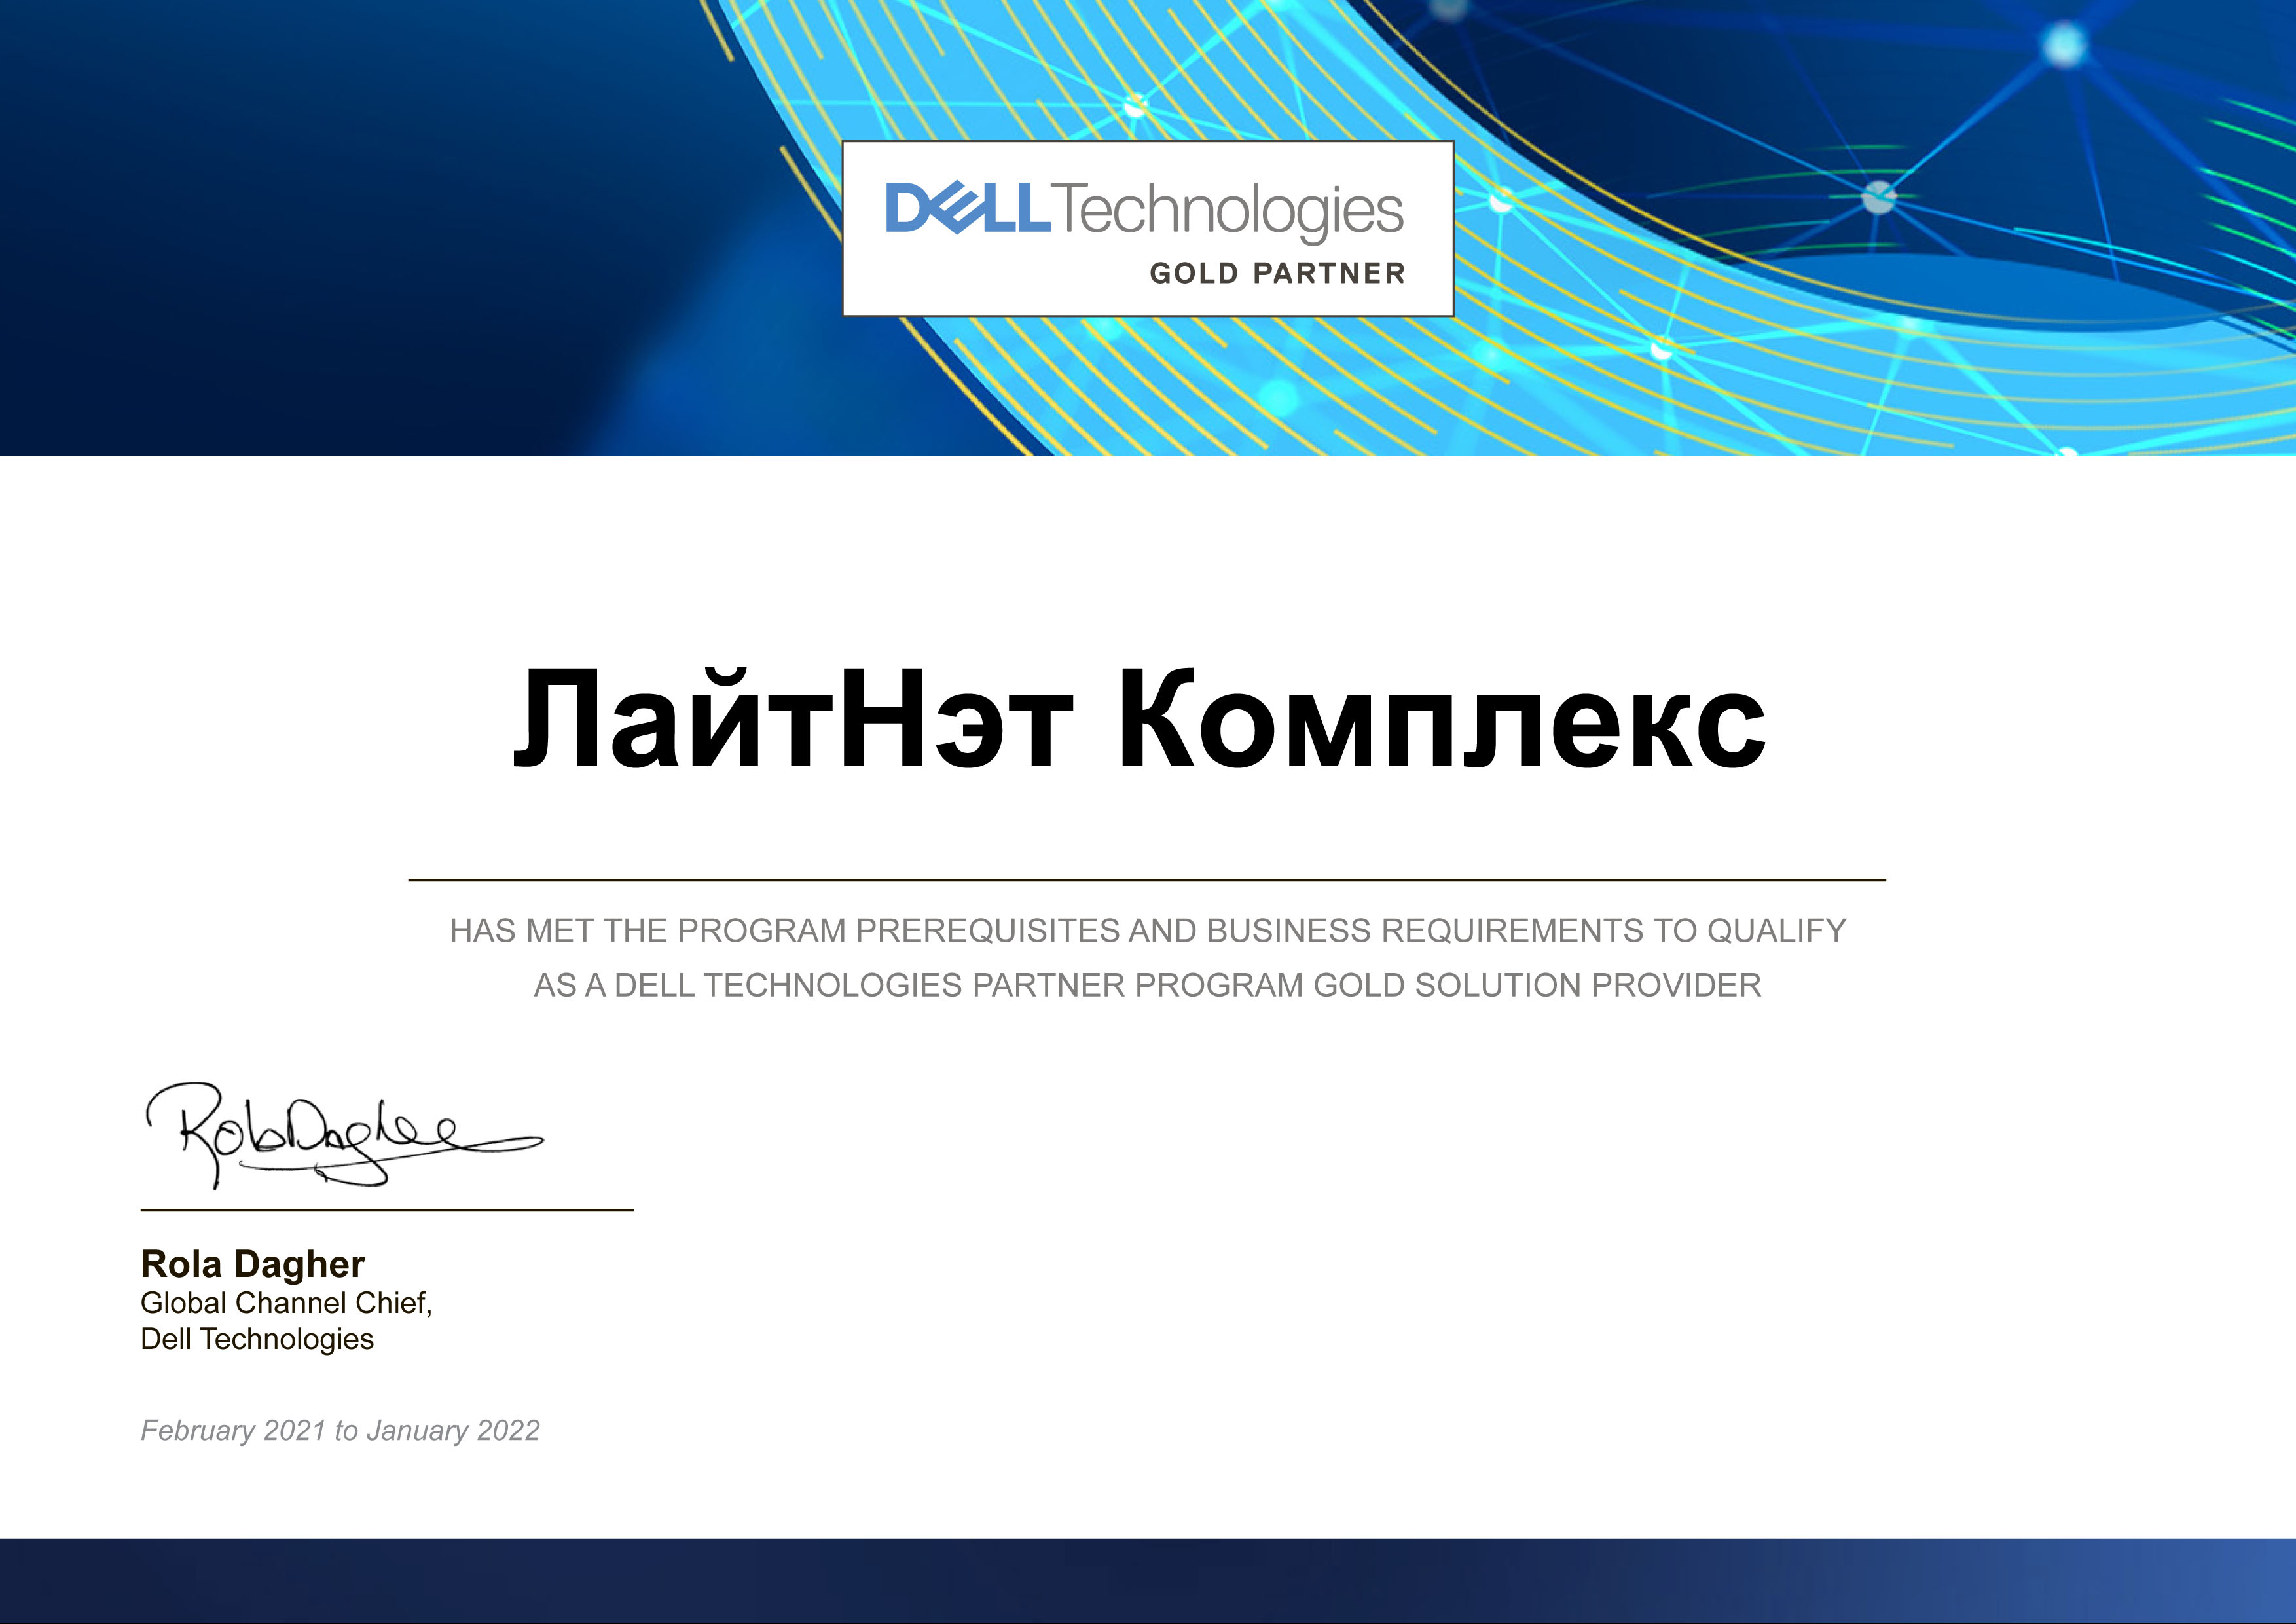 Dell EMC - Partner Gold (Gold Solution Provider)